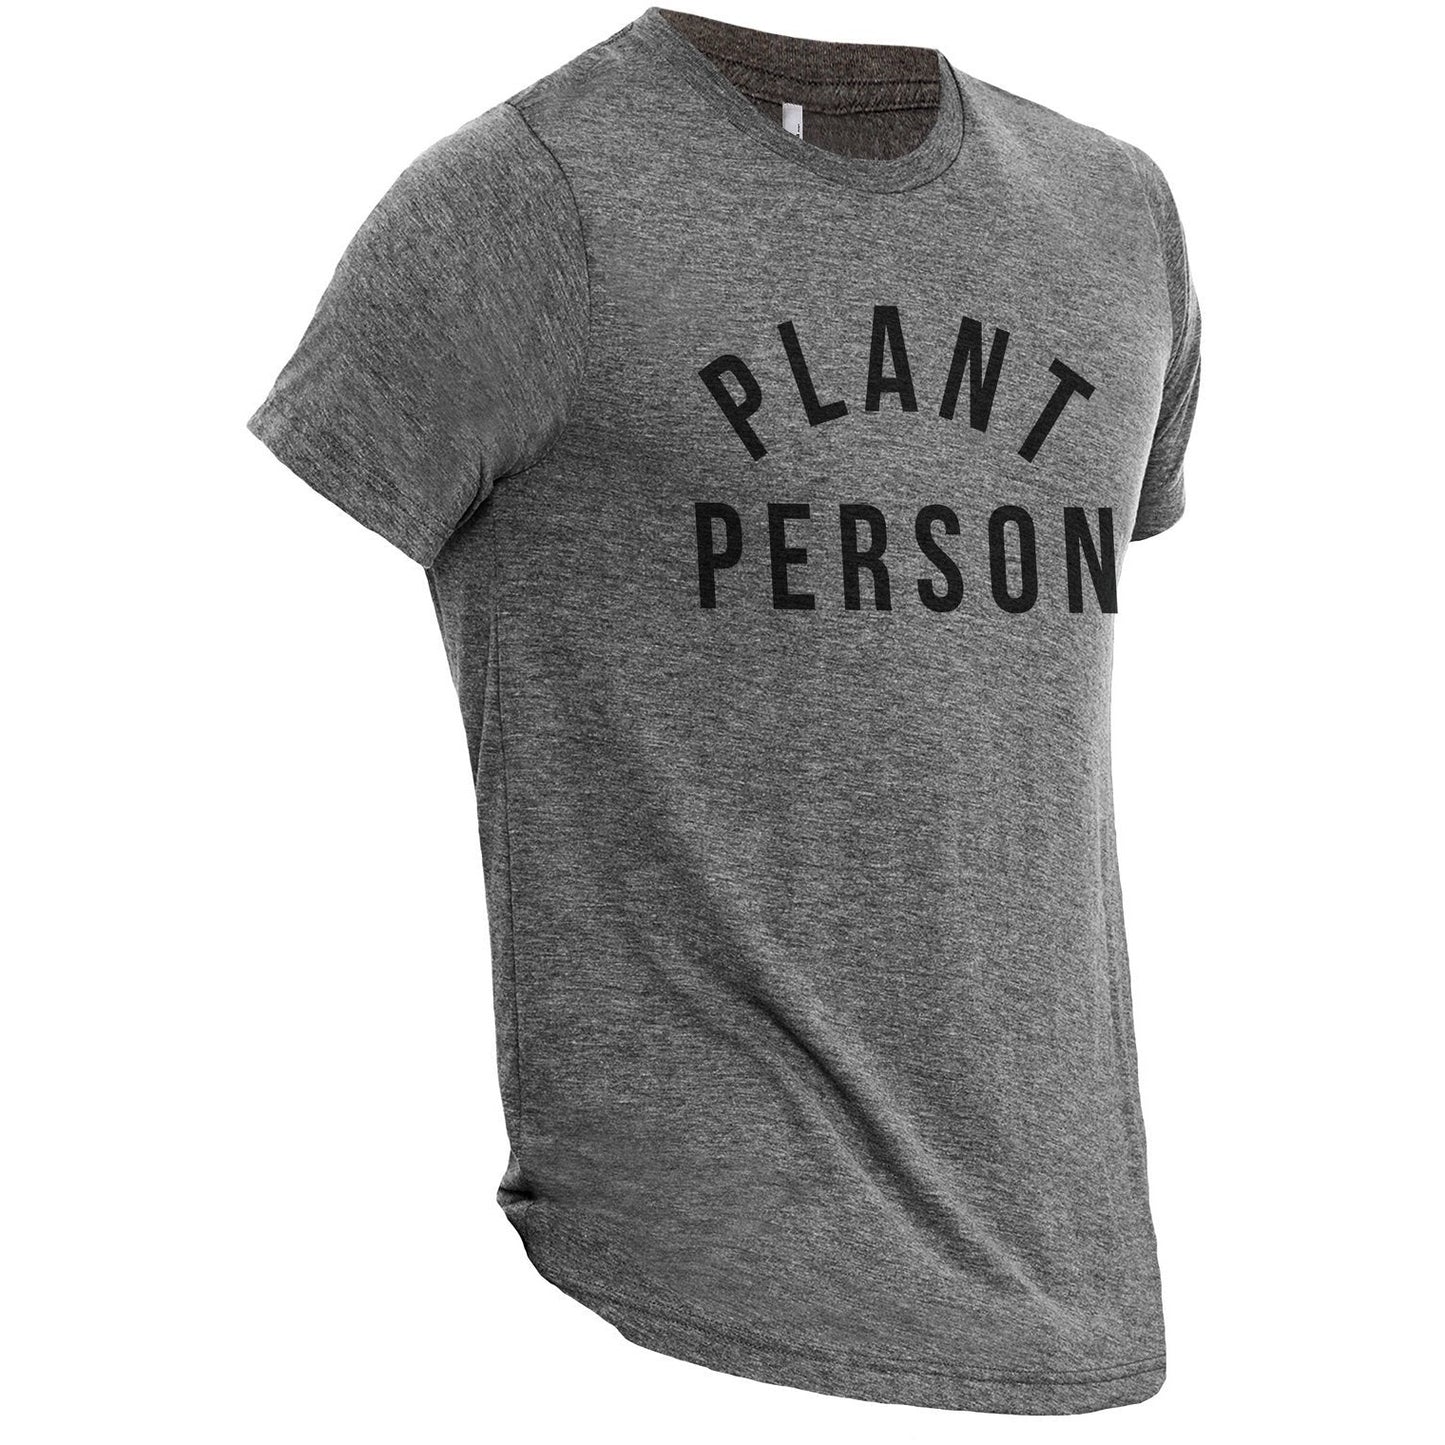 Plant Person